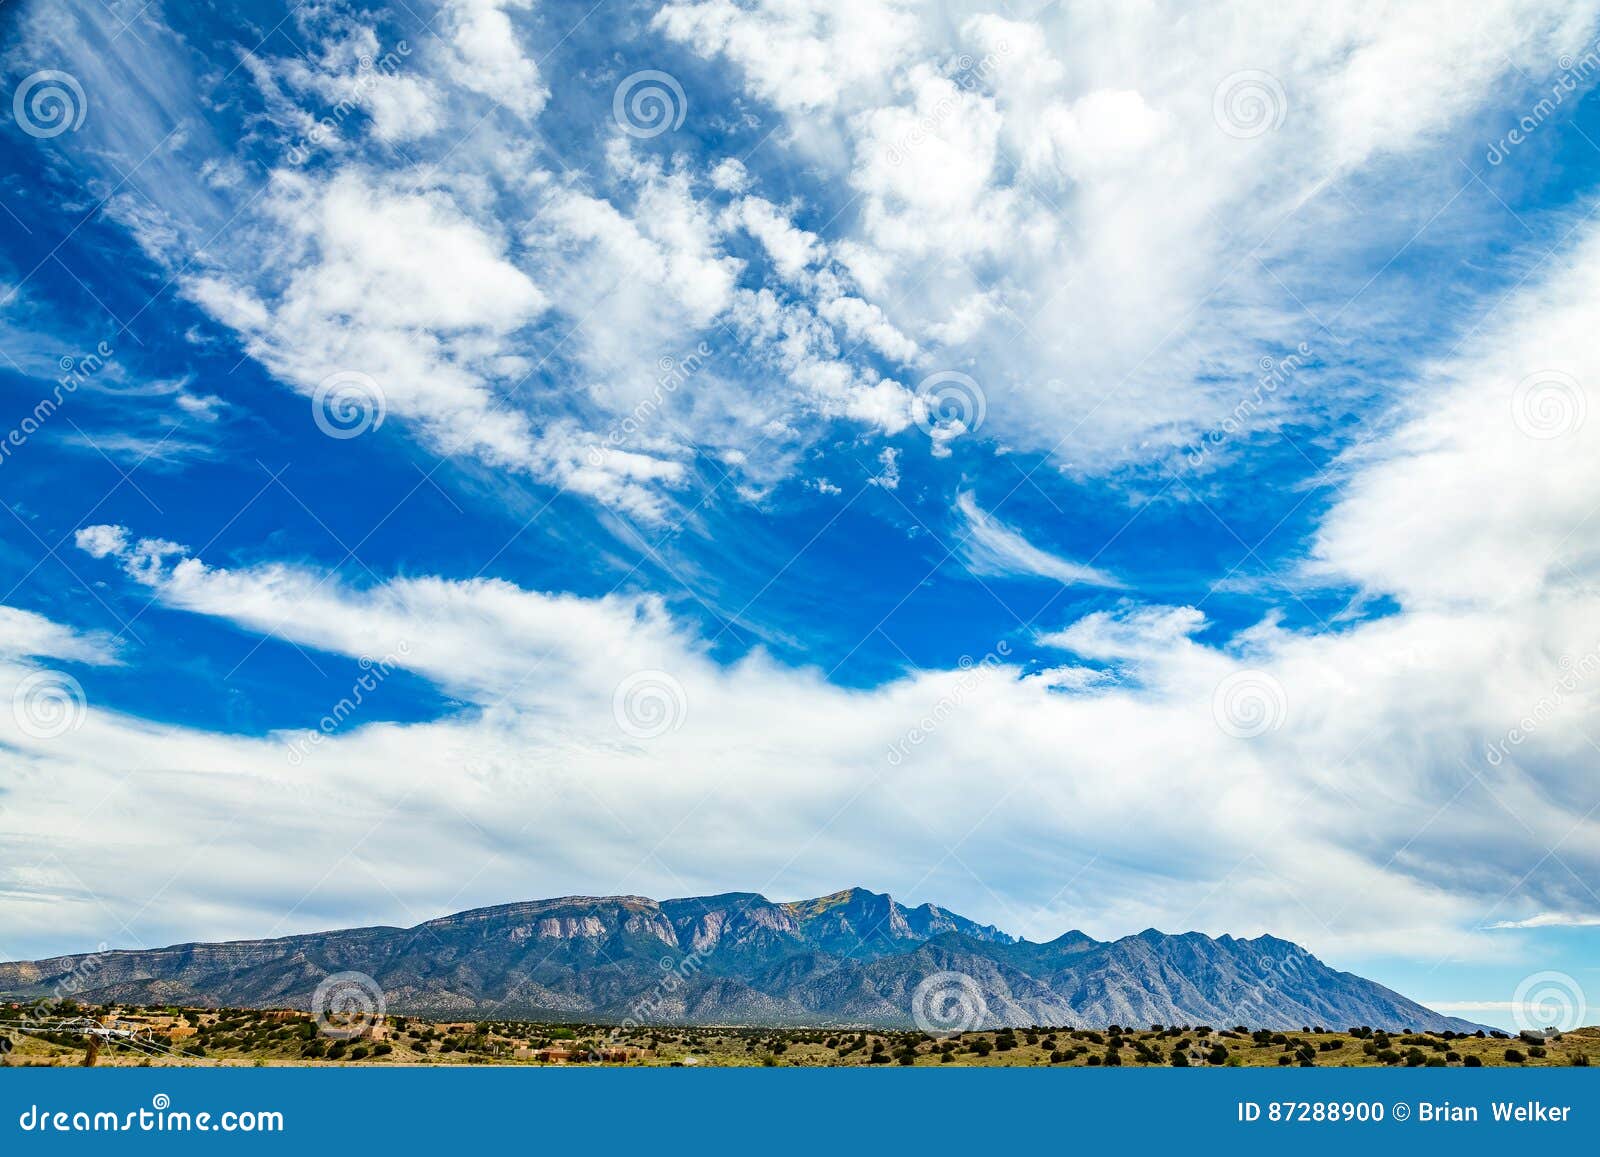 palomas peak sandia mountains